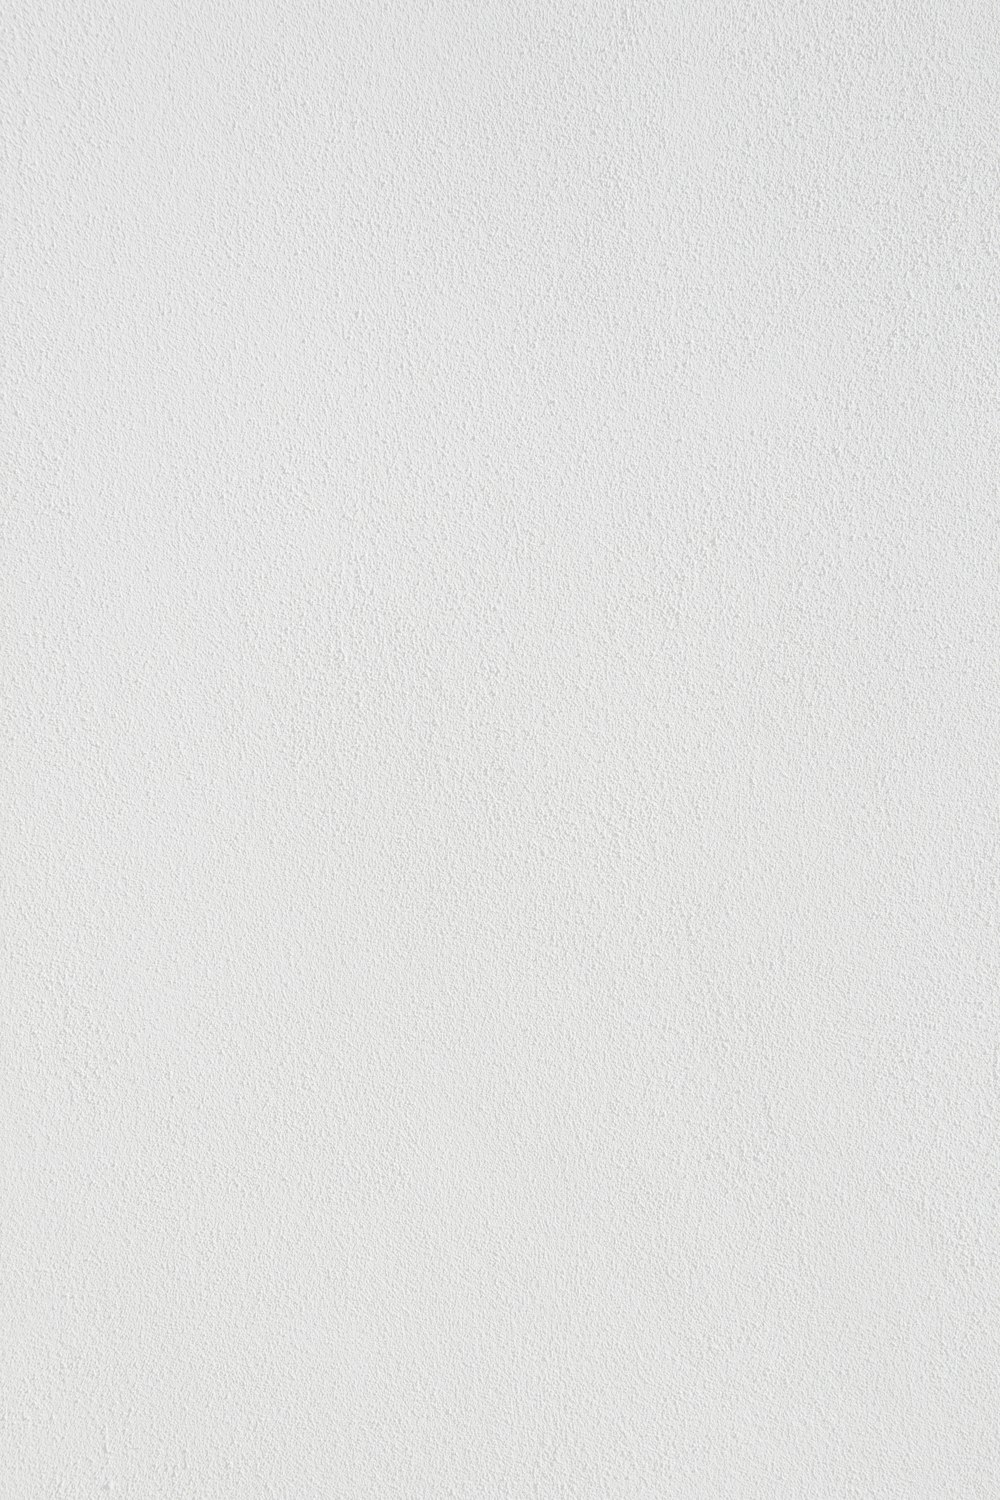 weiße Wandfarbe mit schwarzer Linie